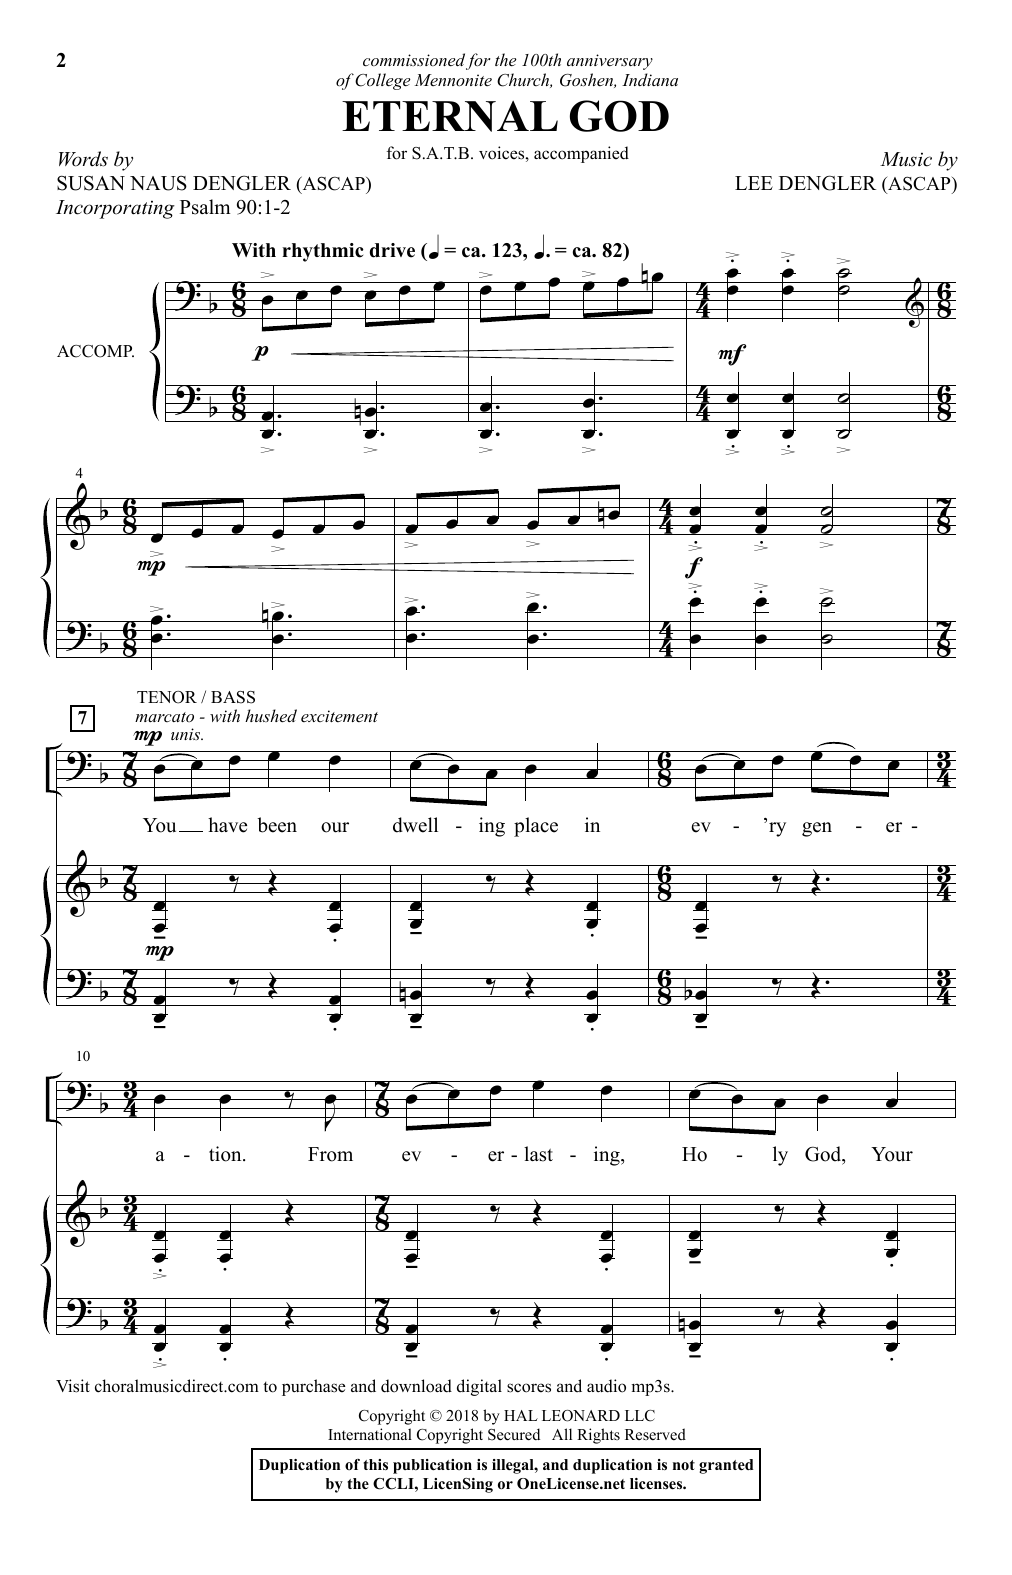 Lee Dengler Eternal God Sheet Music Notes & Chords for SATB - Download or Print PDF